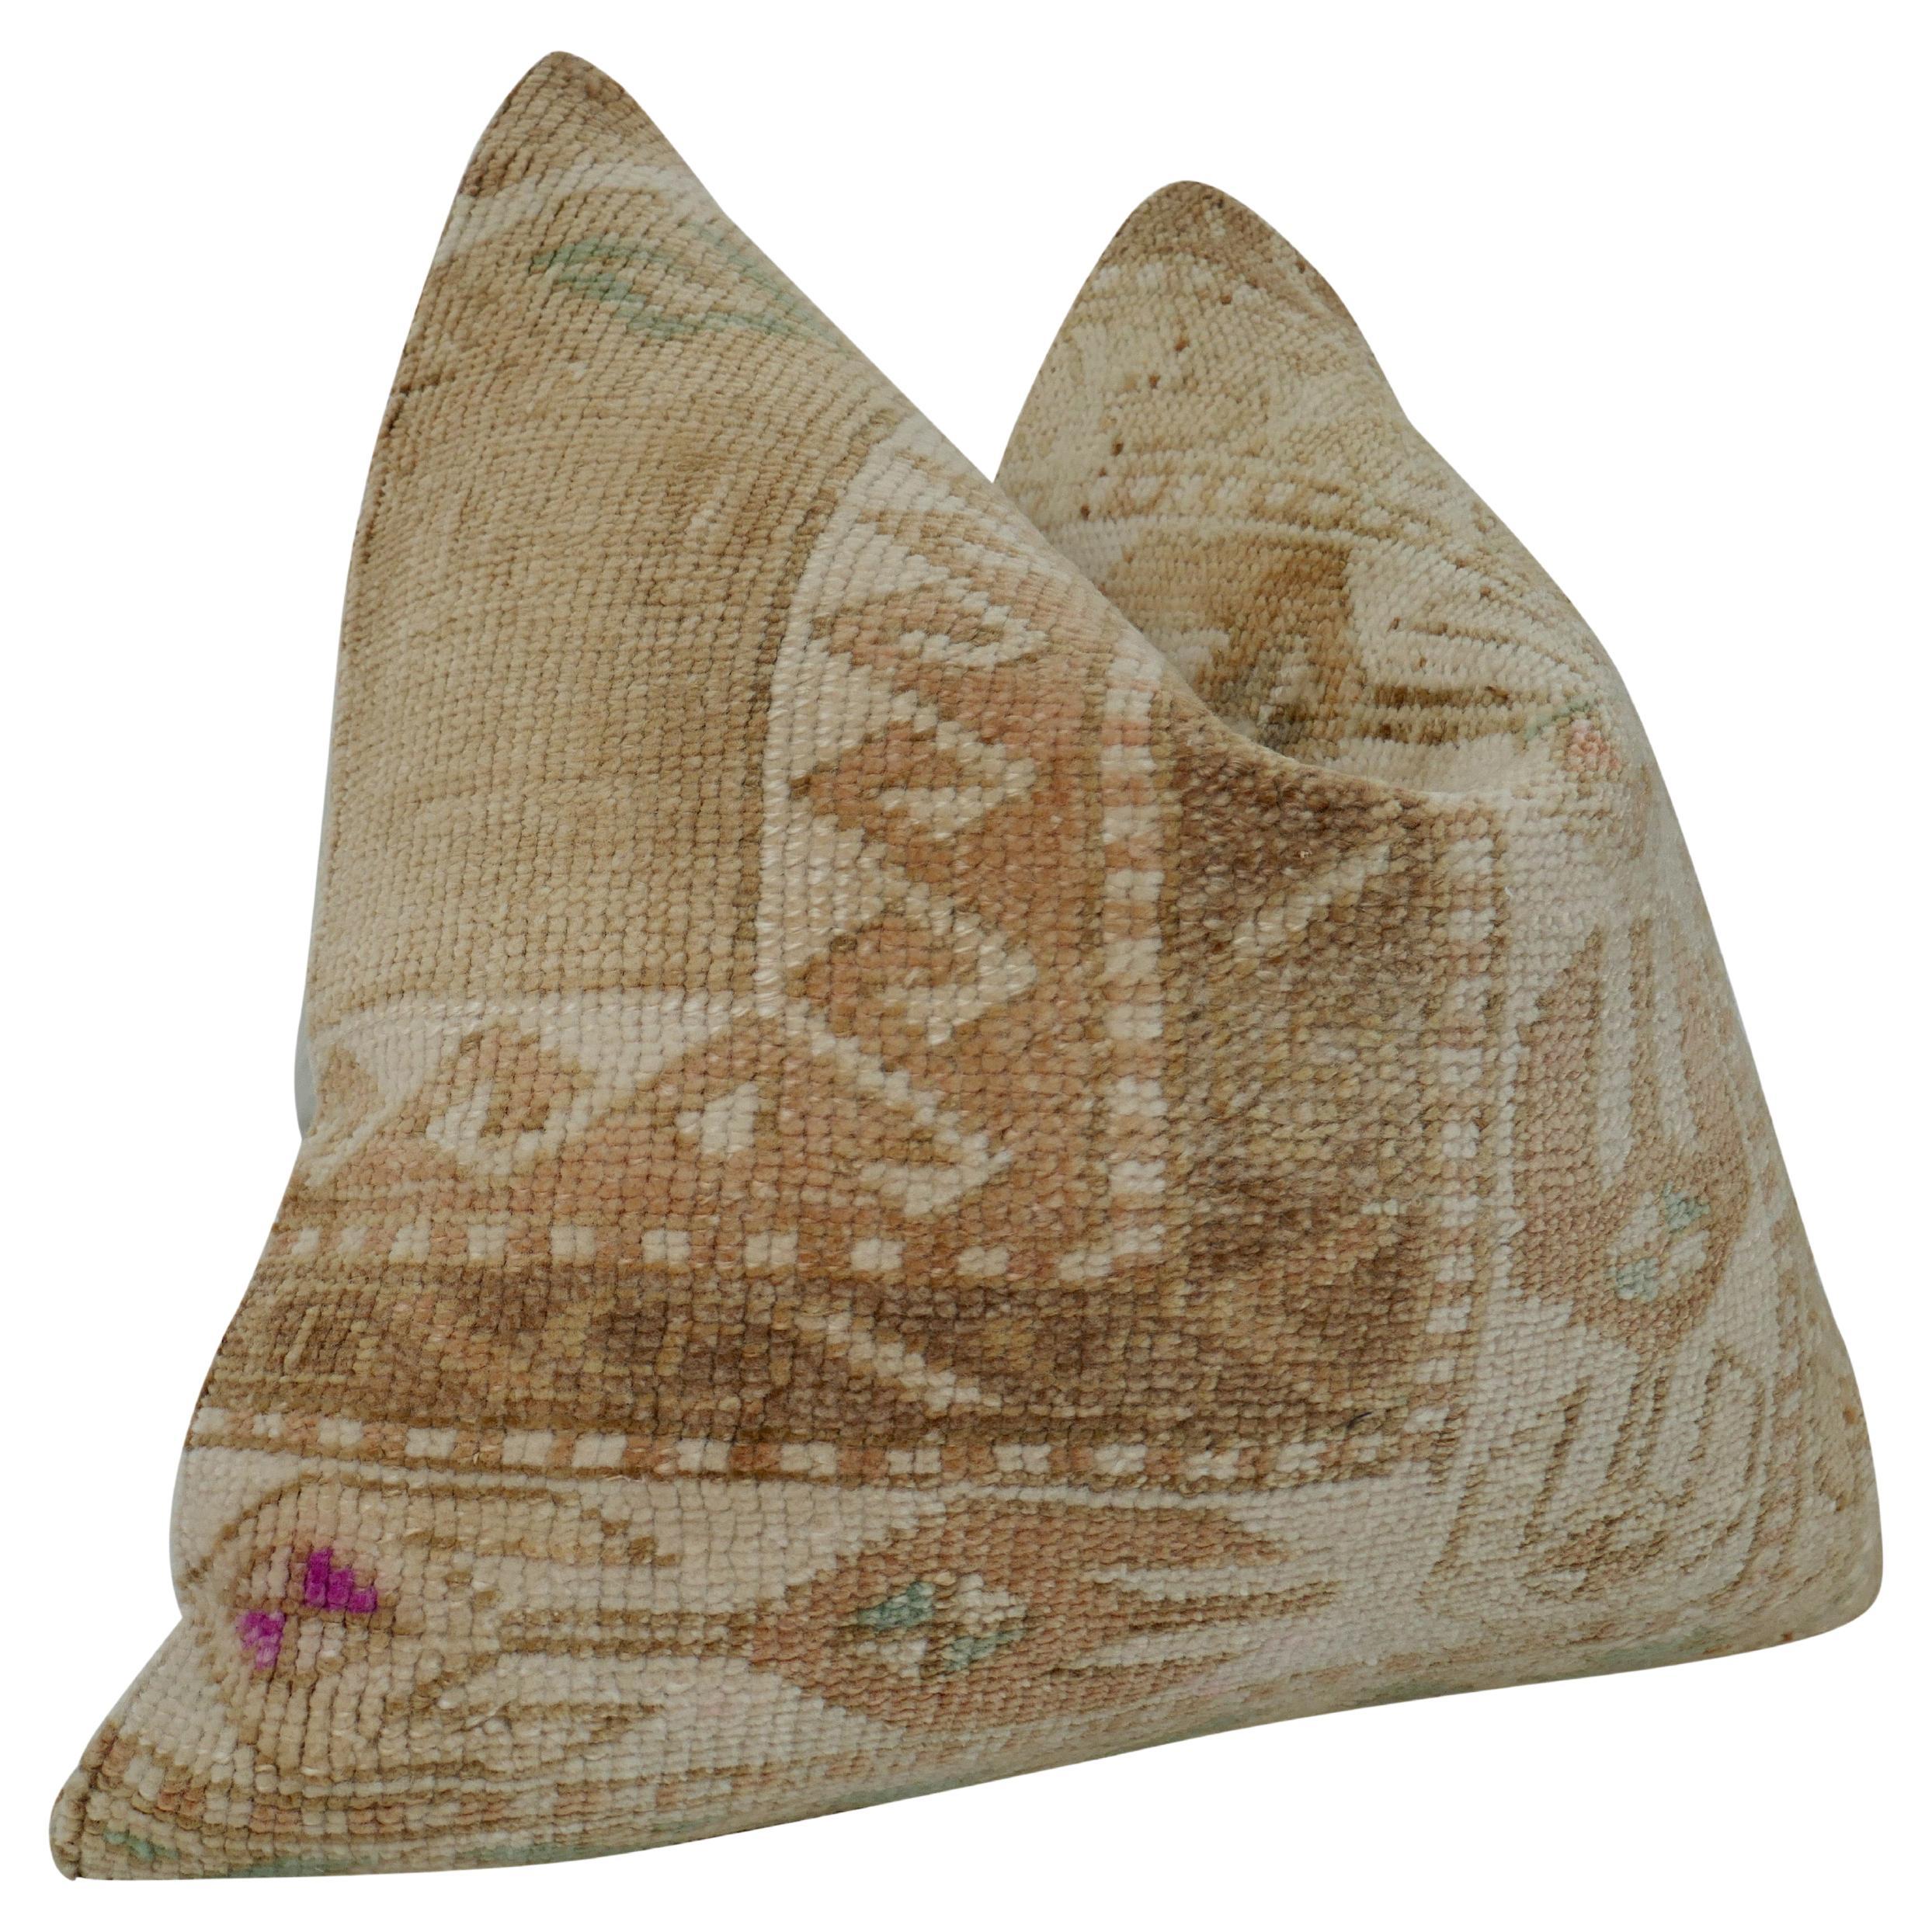 Fragments Identity authentischen Jahrgang anatolischen Kilim Wolle großes Kissen. Wunderschöne Textilkunst, handgewebt aus reiner Wolle zu einem schwer strukturierten, kompliziert gemusterten Motiv, das erstaunliche Farbtöne und Texturen erzeugt.